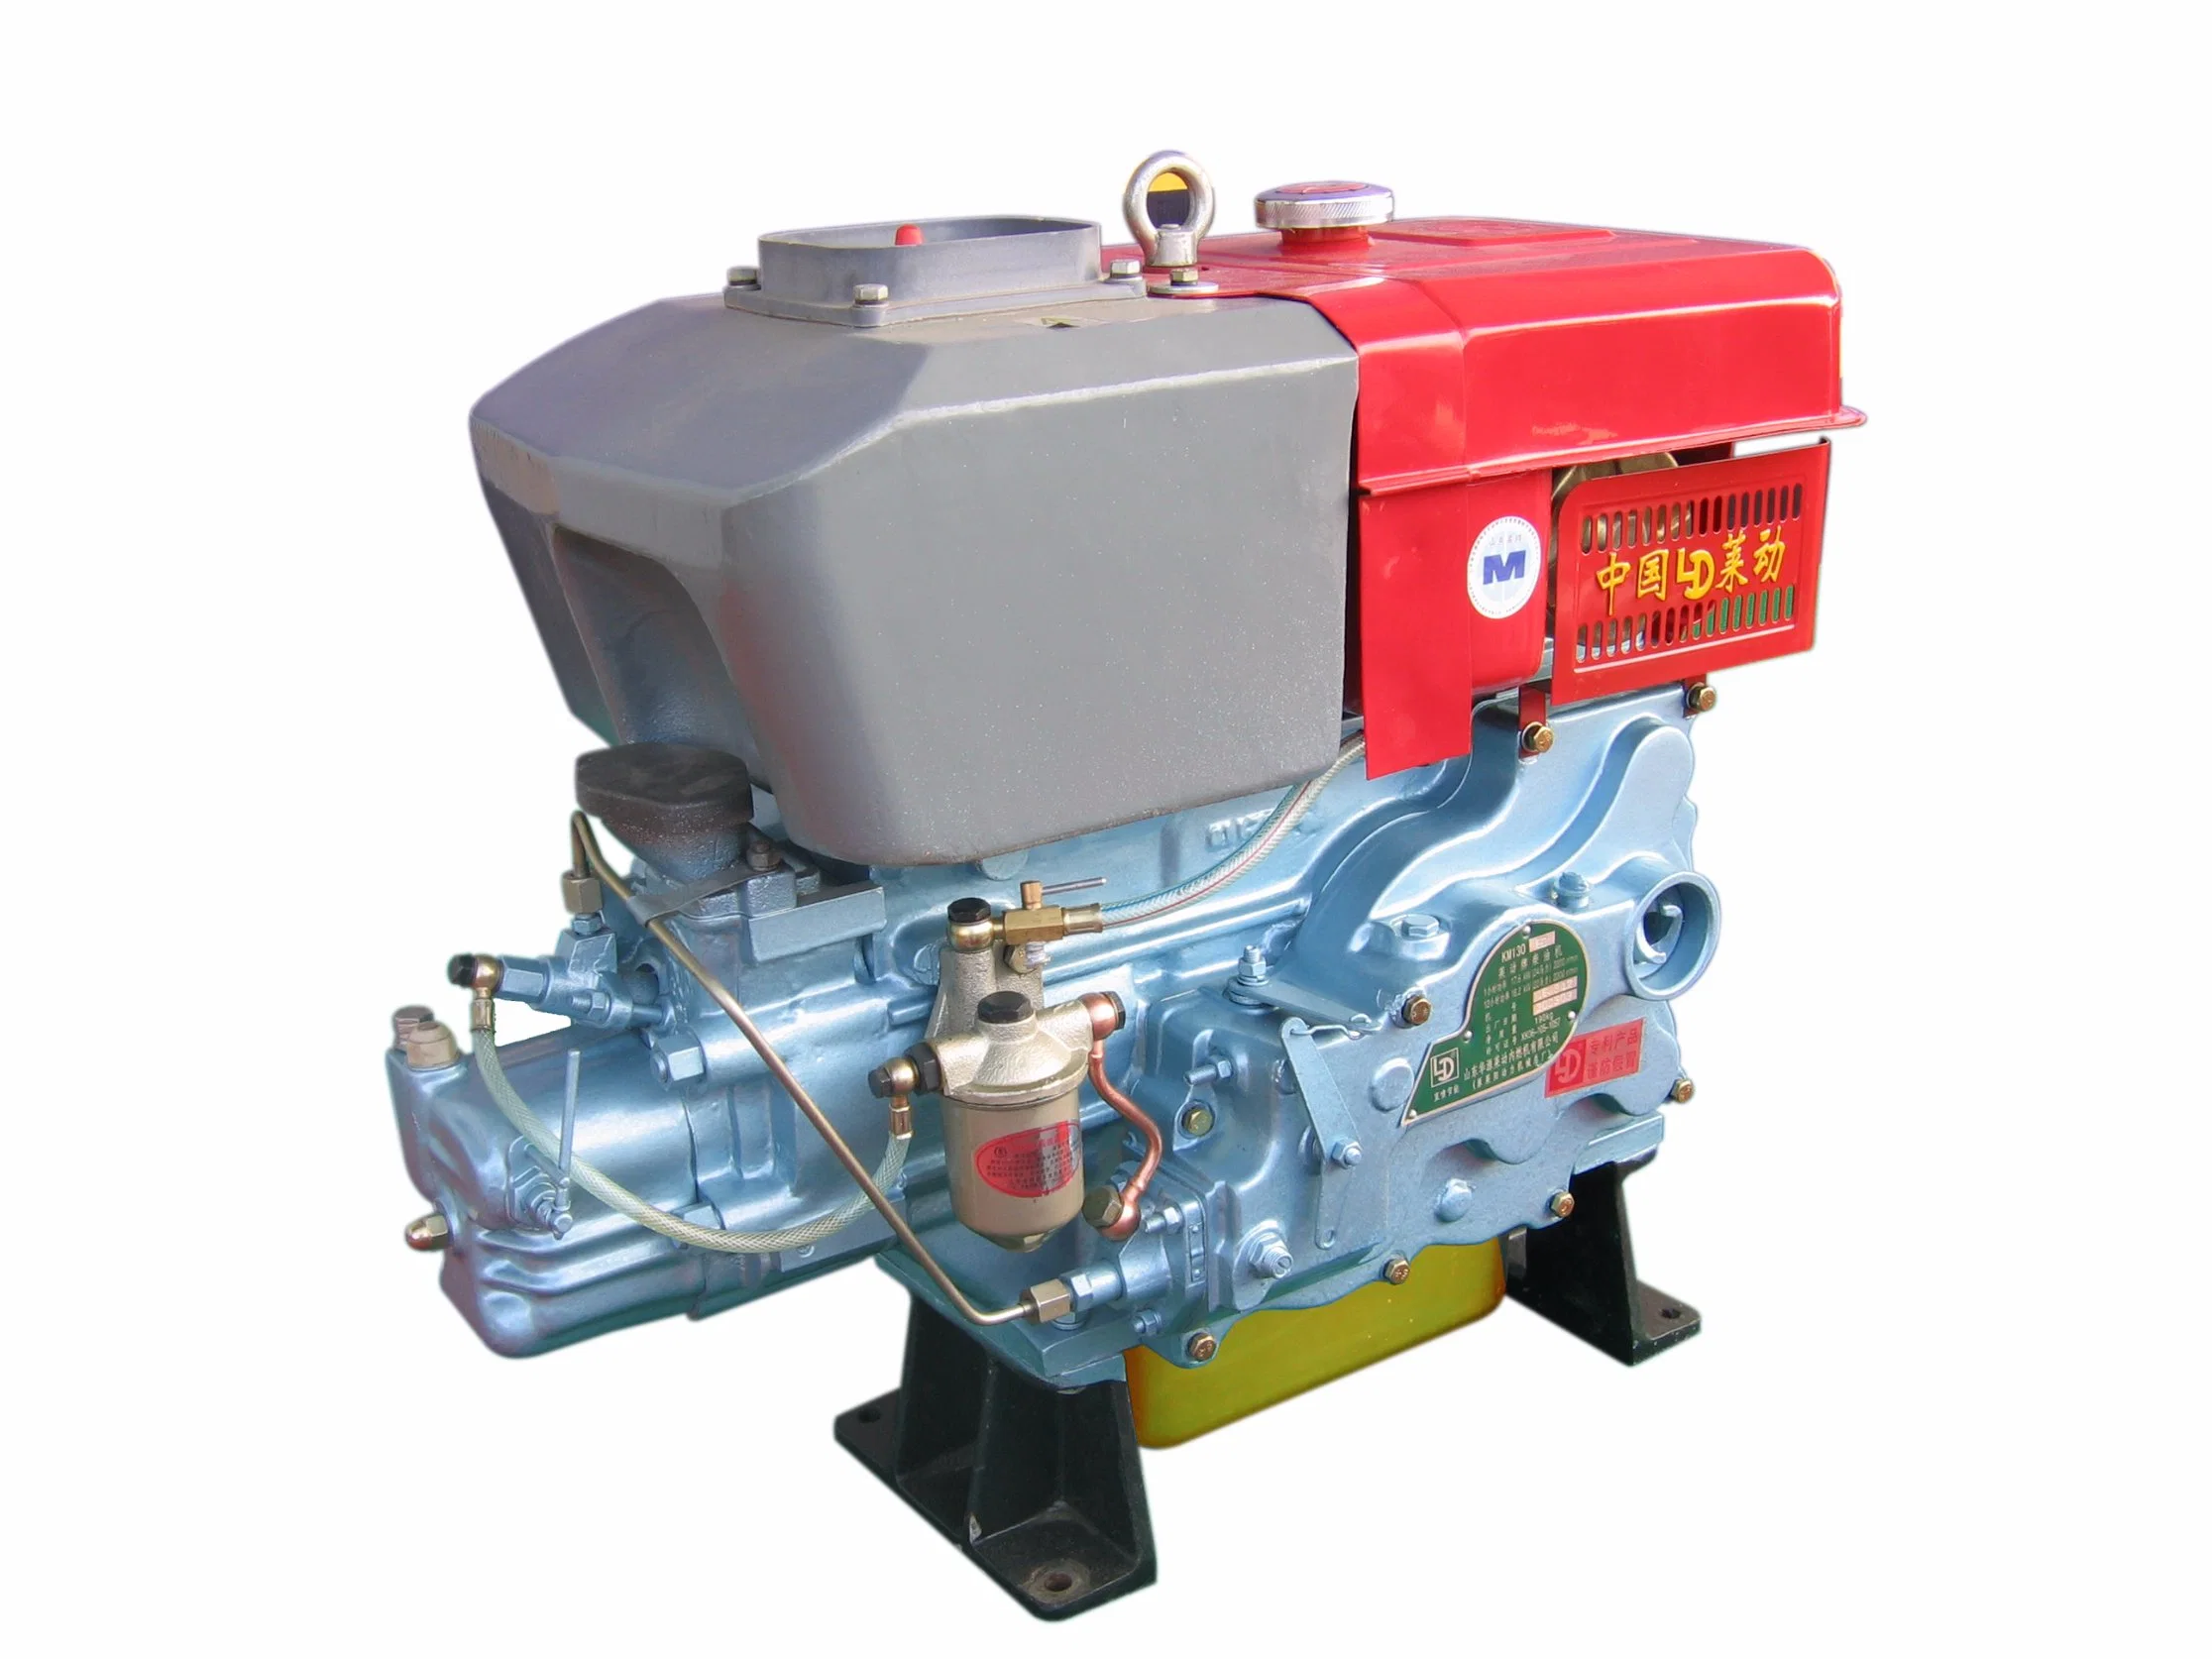 Ld 1105 охлаждения воды продажи одного цилиндра дизельный двигатель с возможностью горячей замены